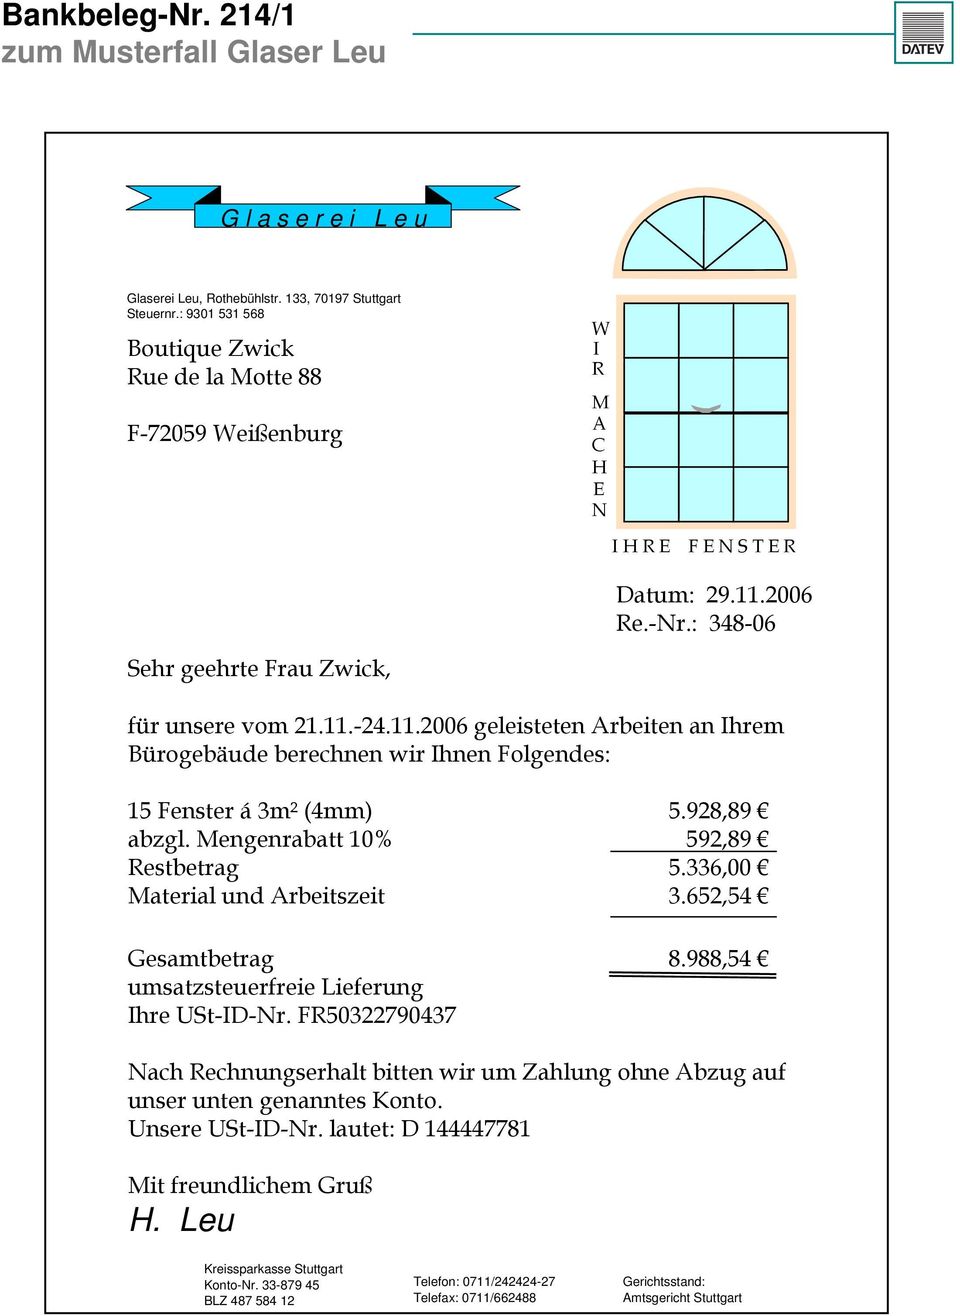 2006 Re.-Nr.: 348-06 Sehr geehrte Frau Zwick, für unsere vom 21.11.-24.11.2006 geleisteten Arbeiten an Ihrem Bürogebäude berechnen wir Ihnen Folgendes: 15 Fenster á 3m² (4mm) 5.928,89 abzgl.